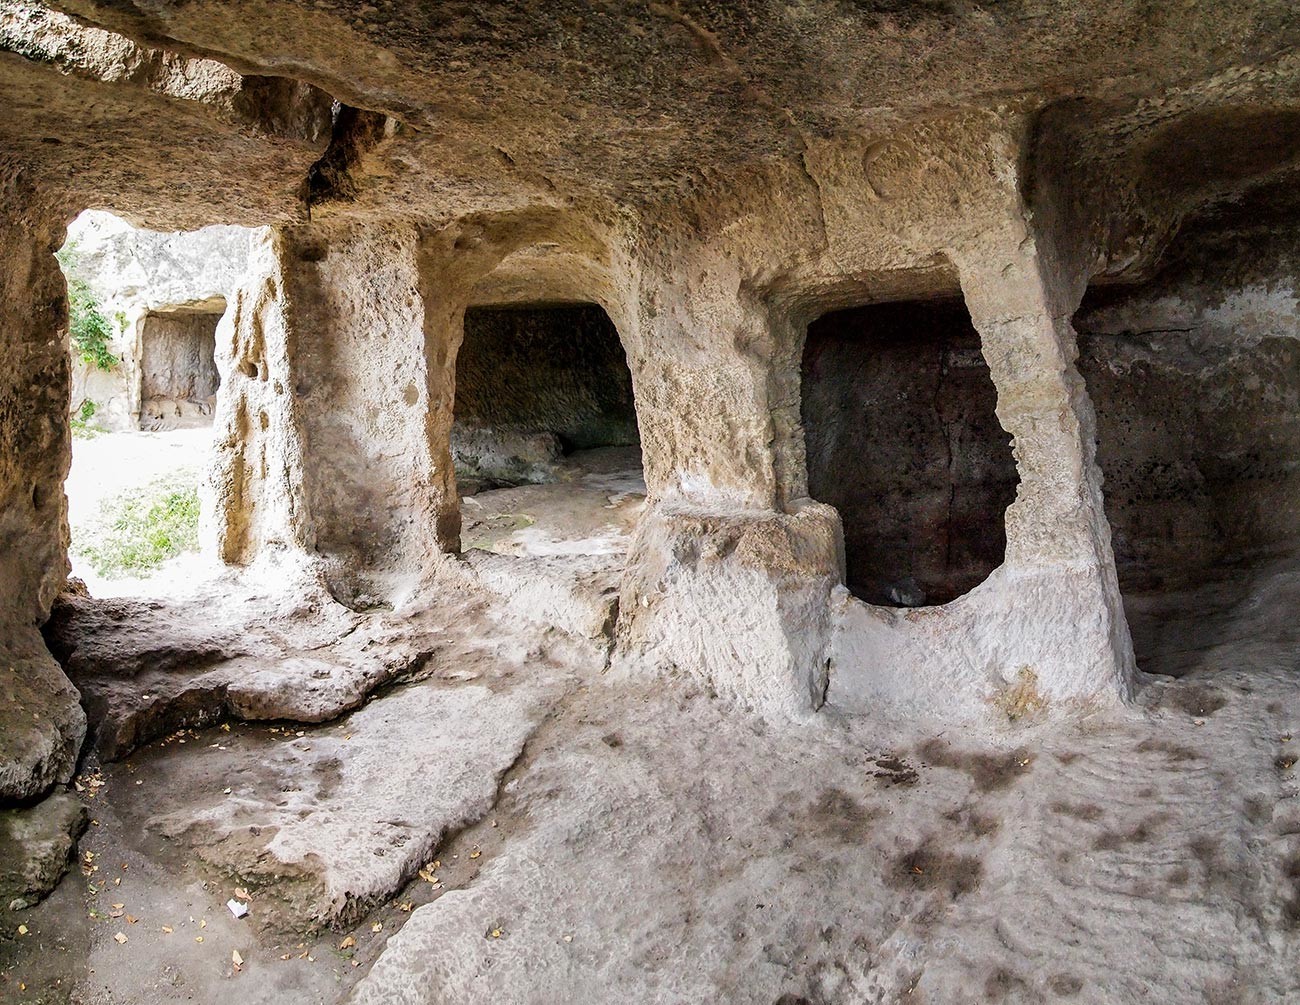 Caverna Tchufut Kale.

